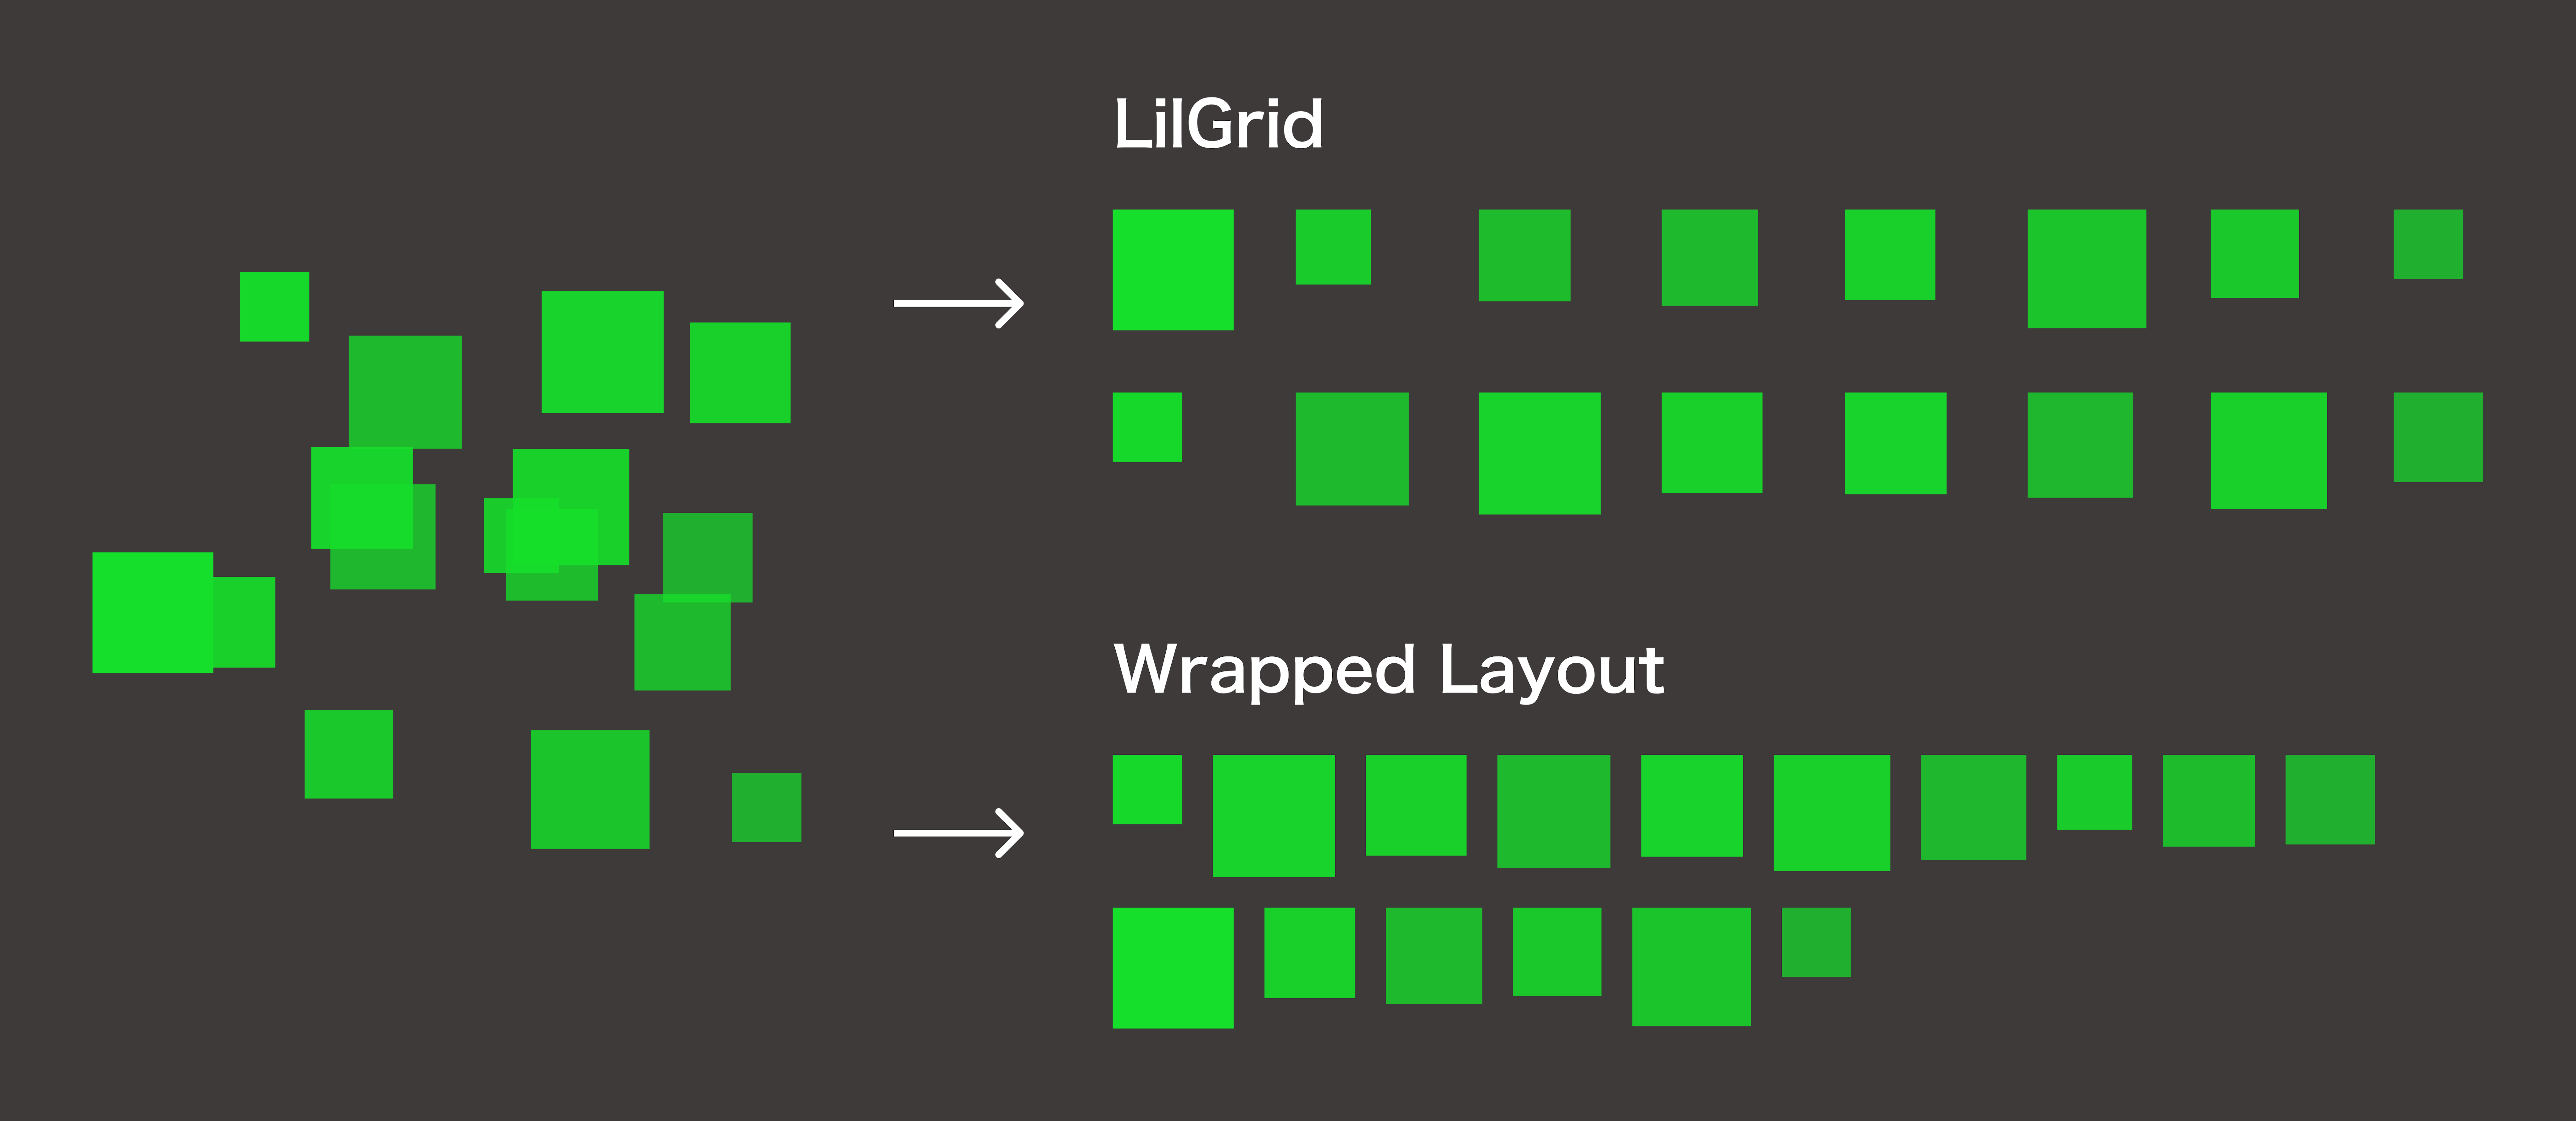 LilGridはグリッドに沿って整列、Wrapped Layoutはオブジェクトの大きさに合わせて等間隔に整列します。